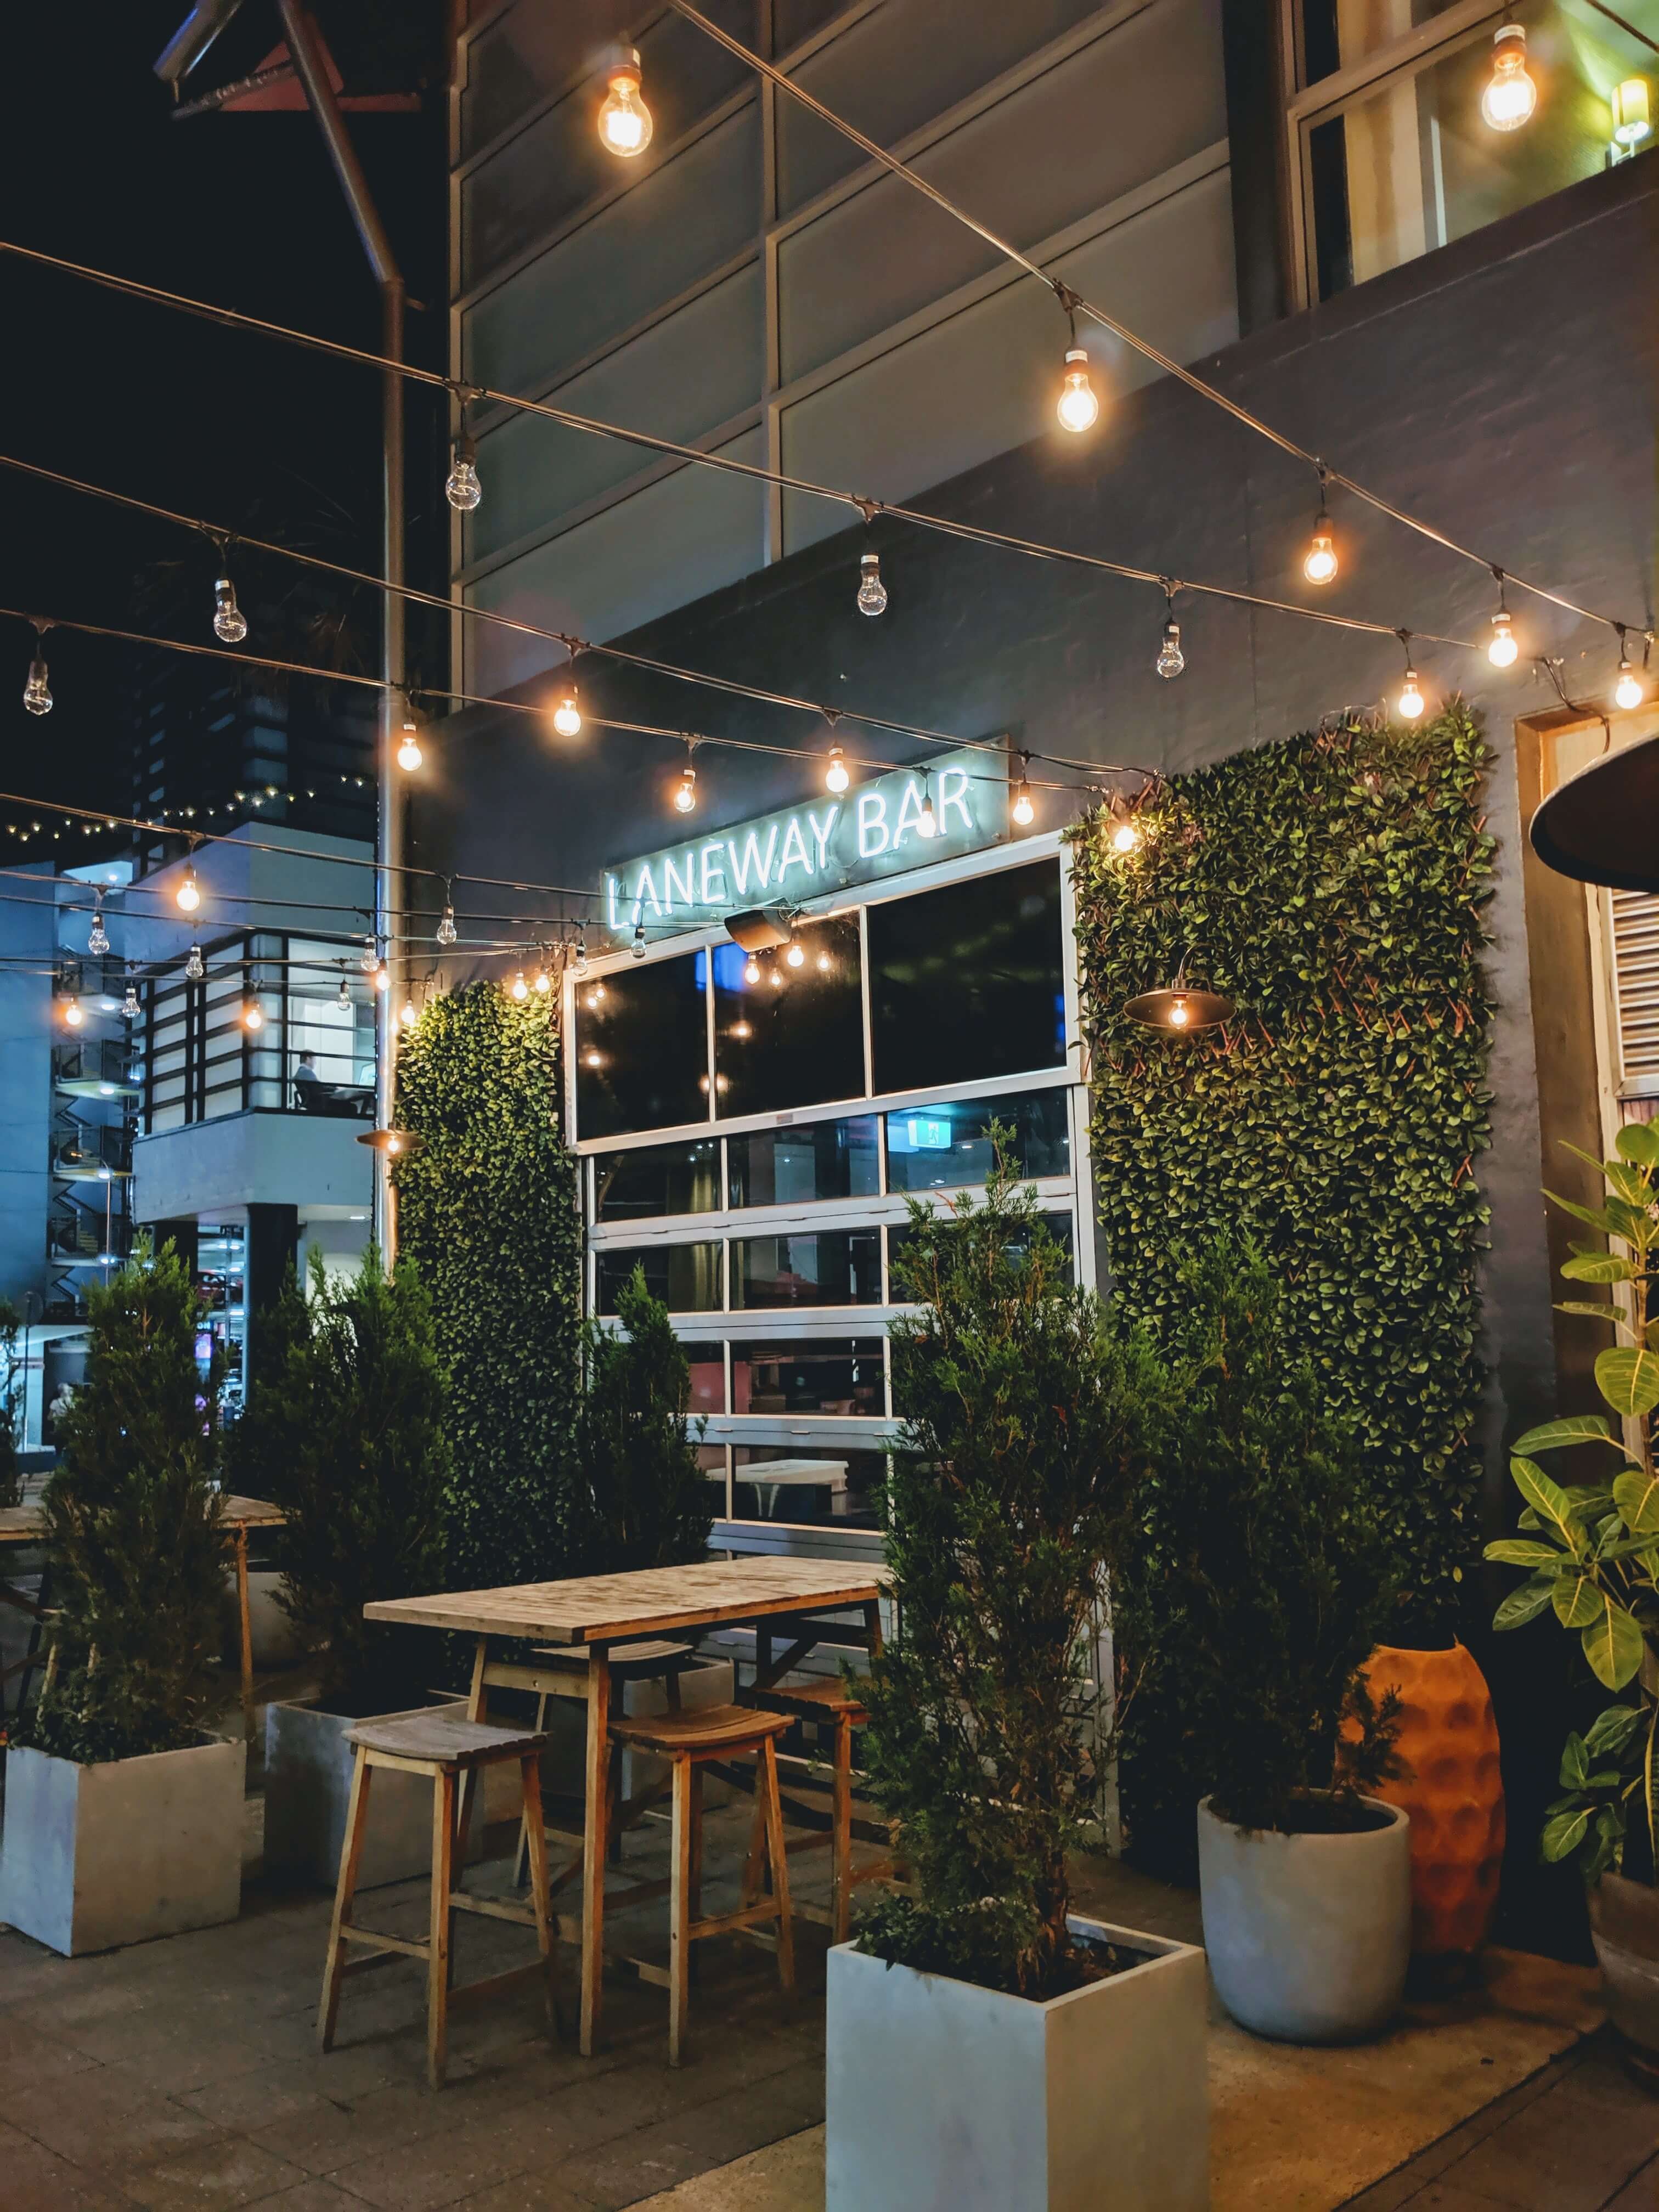 Trang trí quán cafe với đèn thả sẽ tạo nên không gian sang trọng và độc đáo. Đèn thả được bố trí khắp nơi trong quán cafe sẽ giúp tạo ra một không gian ấn tượng, thu hút khách hàng đến thưởng thức cà phê và tận hưởng không gian đẹp.